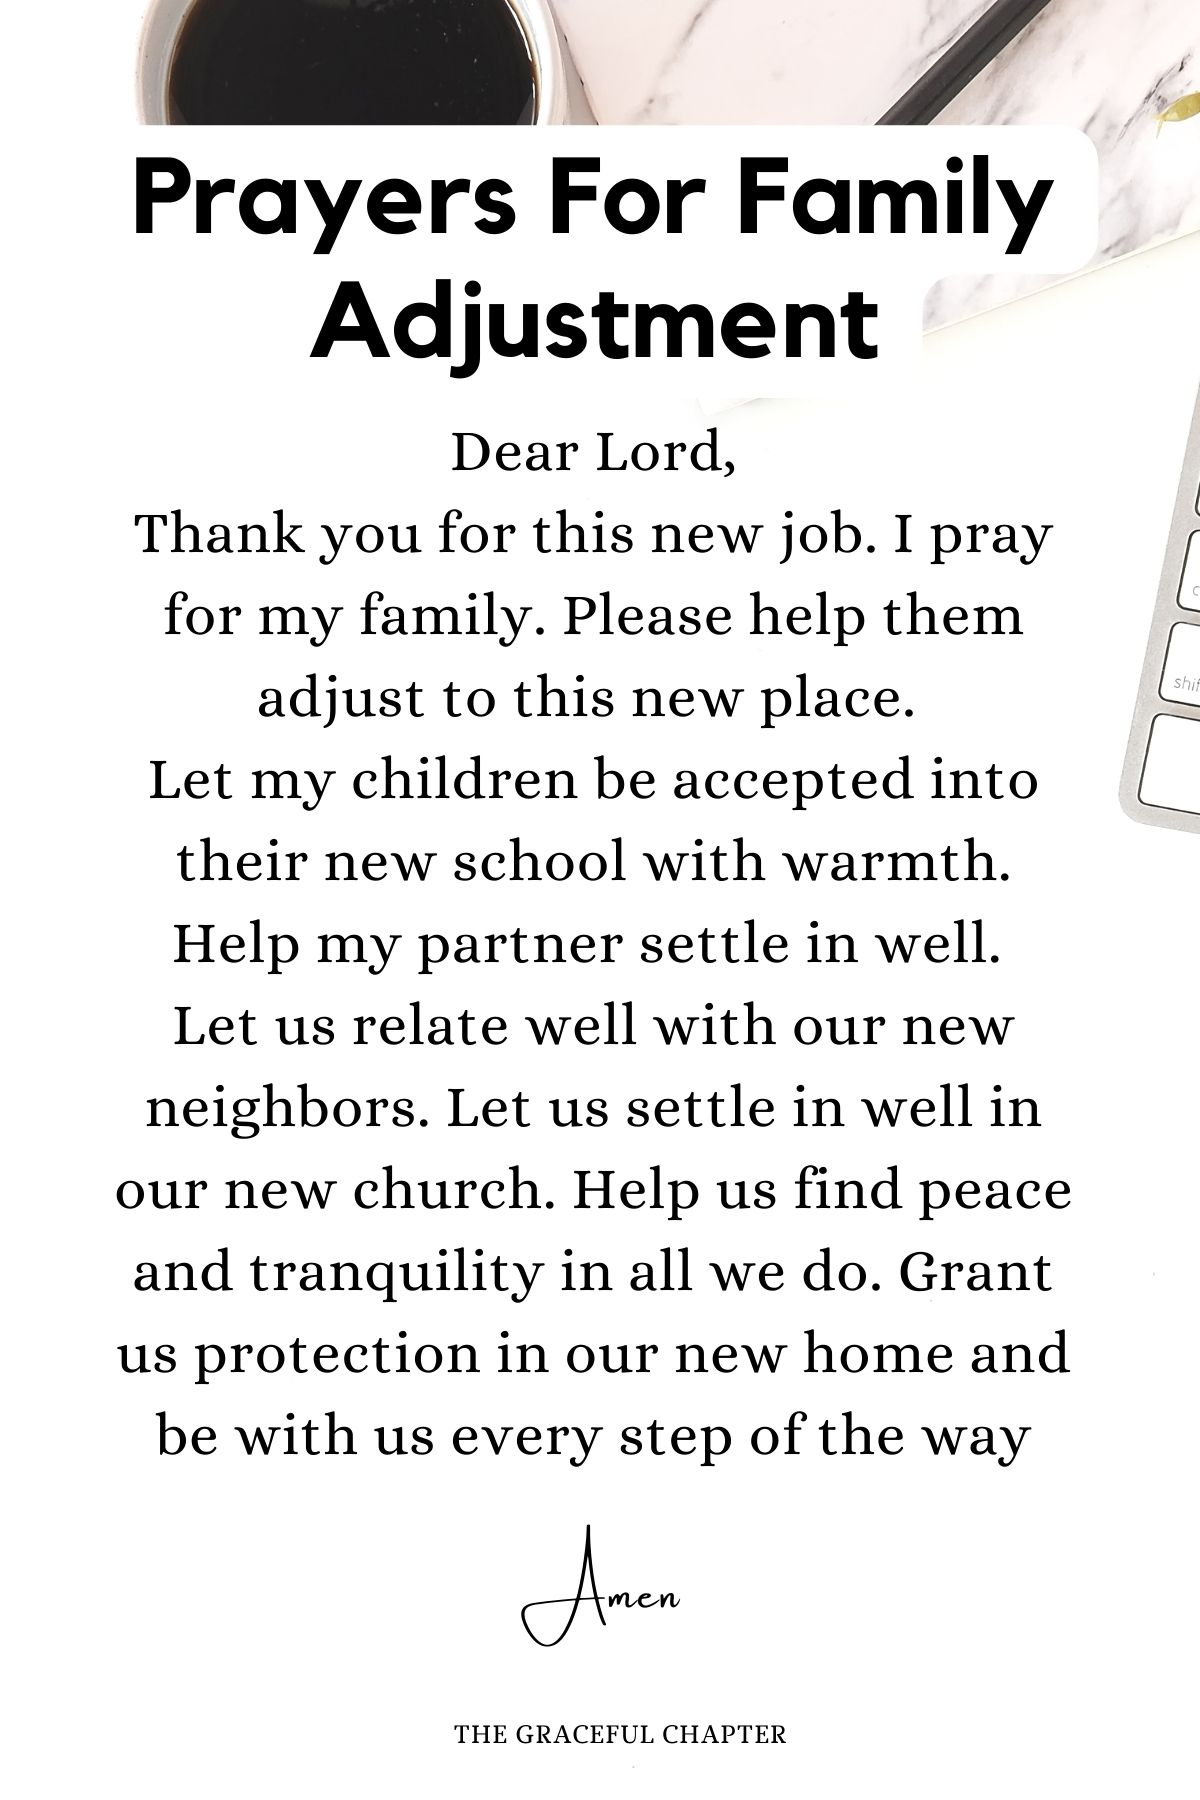 Prayer for family adjustment